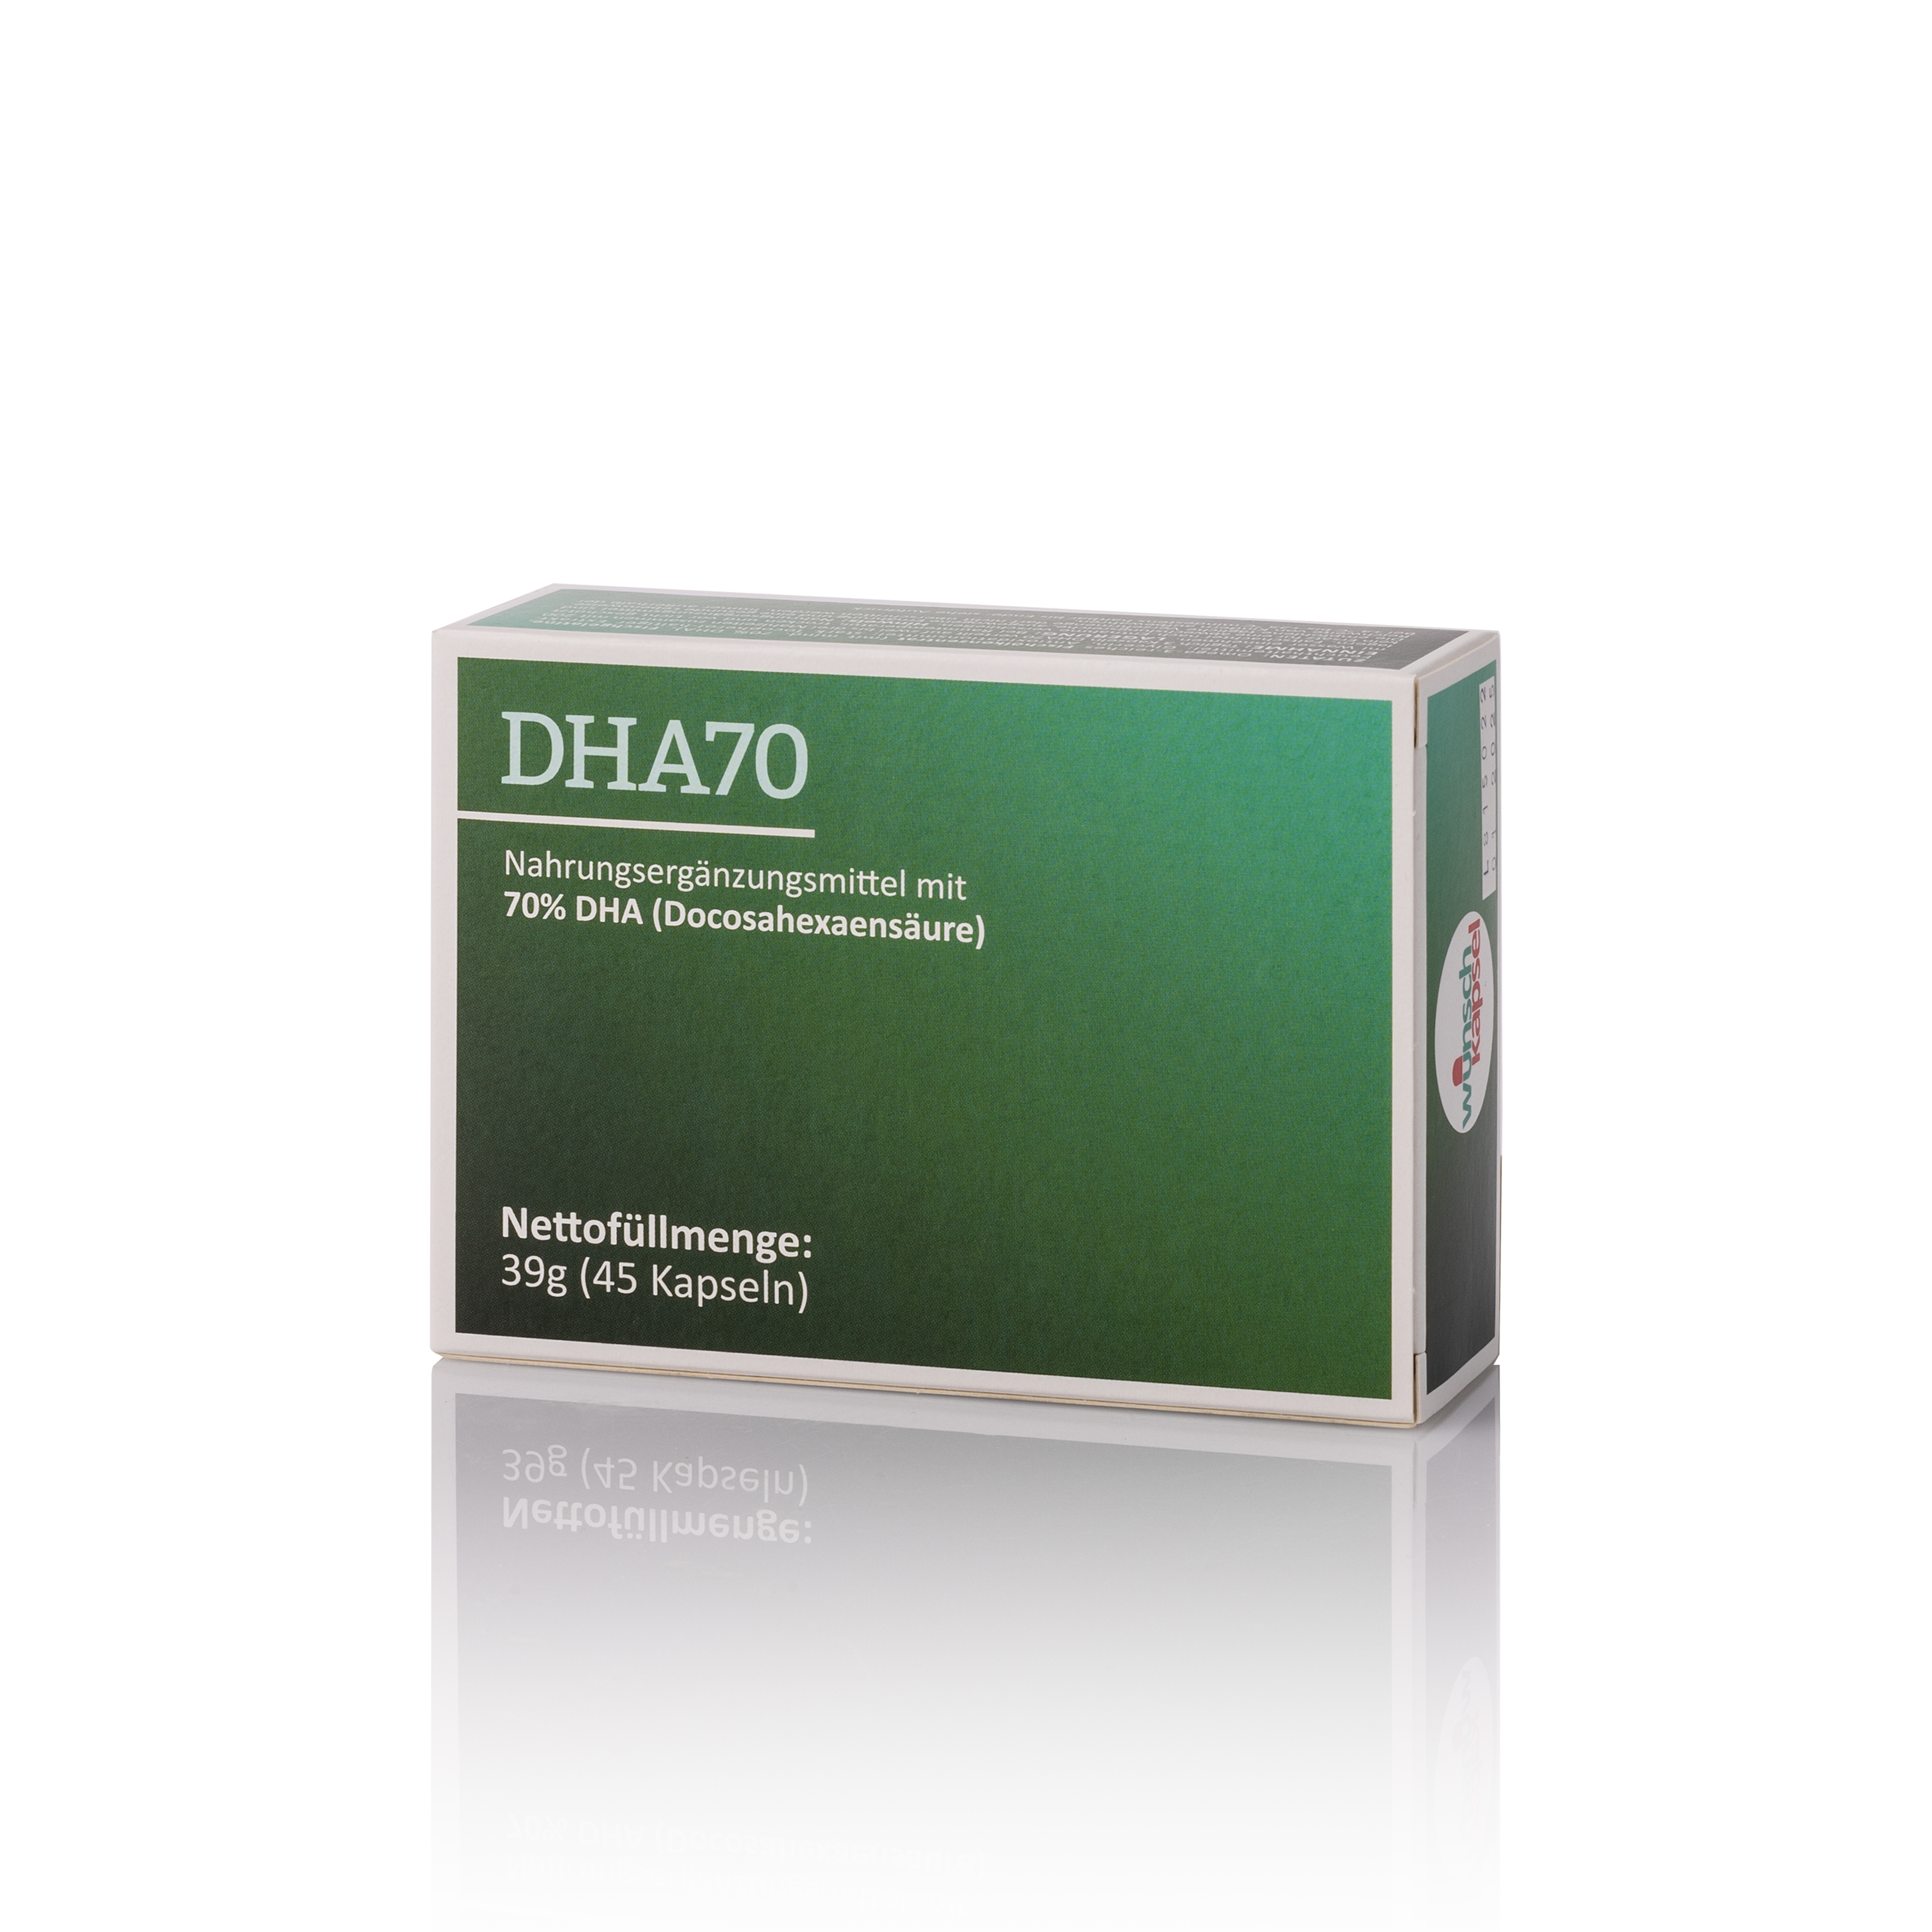 DHA70 (70% DHA, 500 mg pro Kapsel)